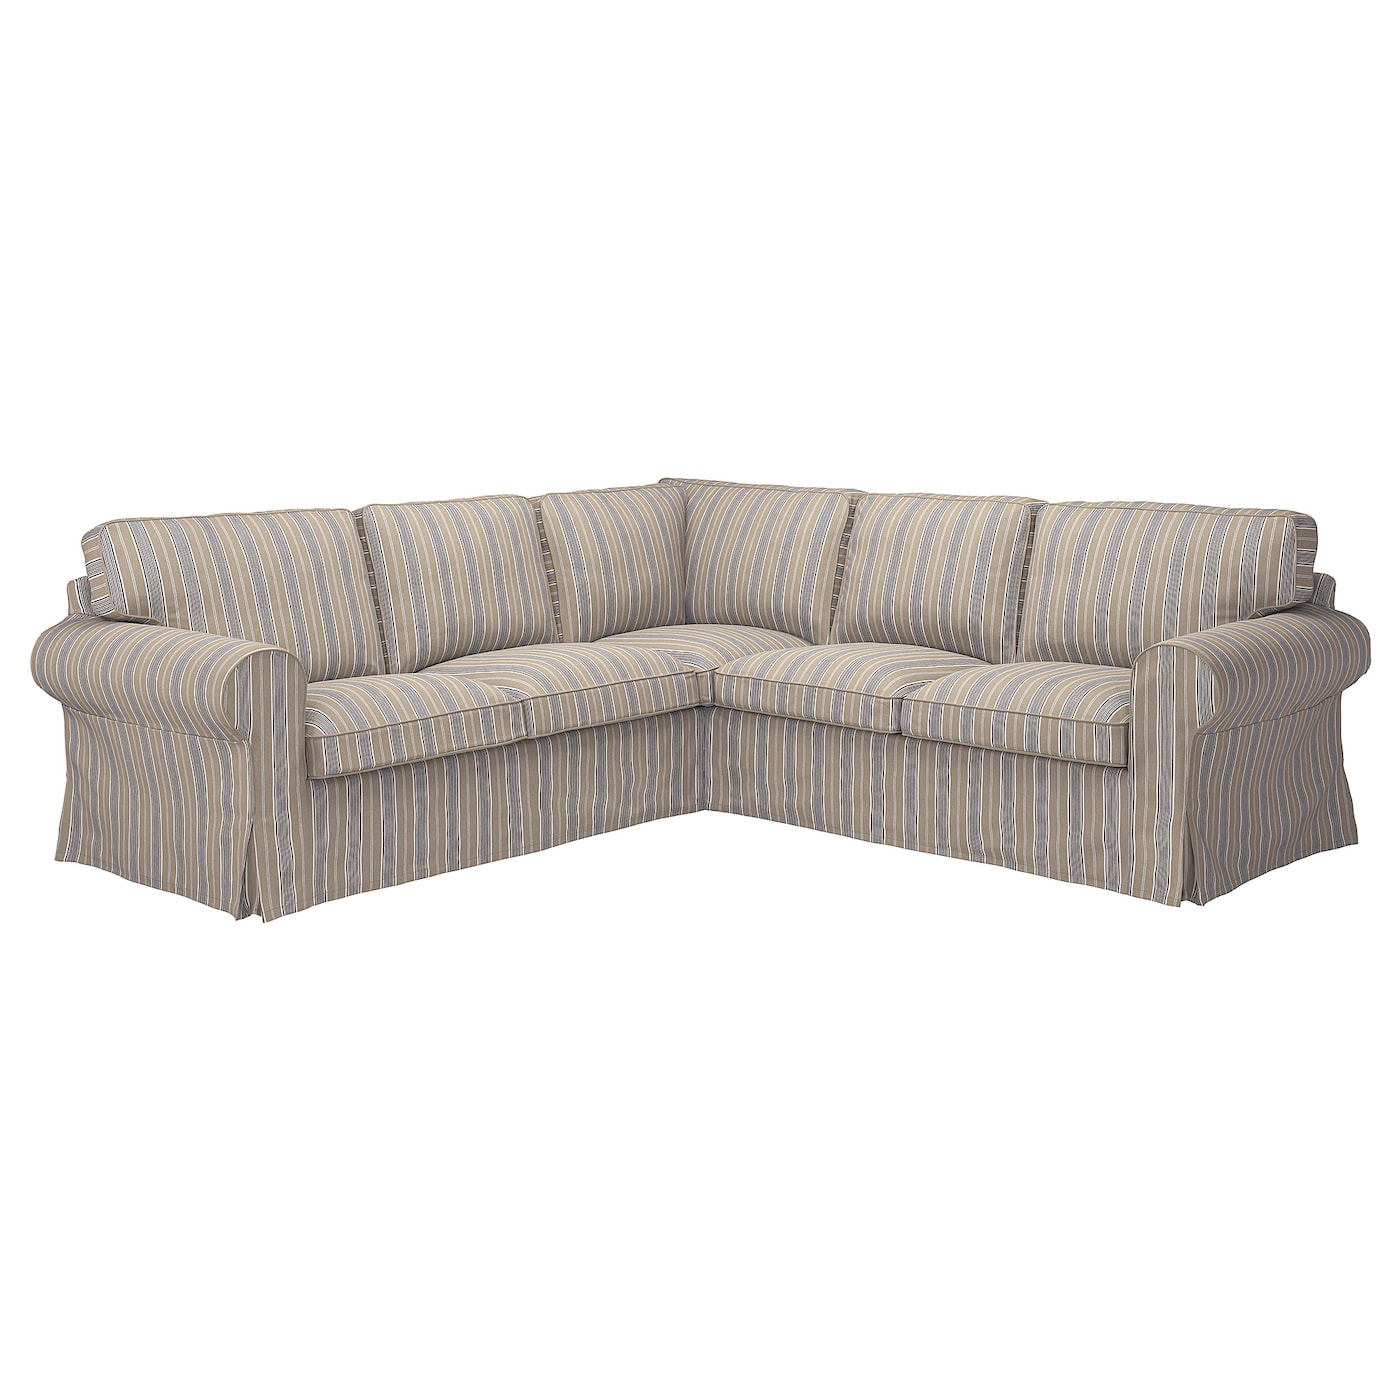 4-местный угловой диван - IKEA EKTORP, 88x243см, бежевый/серый, ЭКТОРП ИКЕА